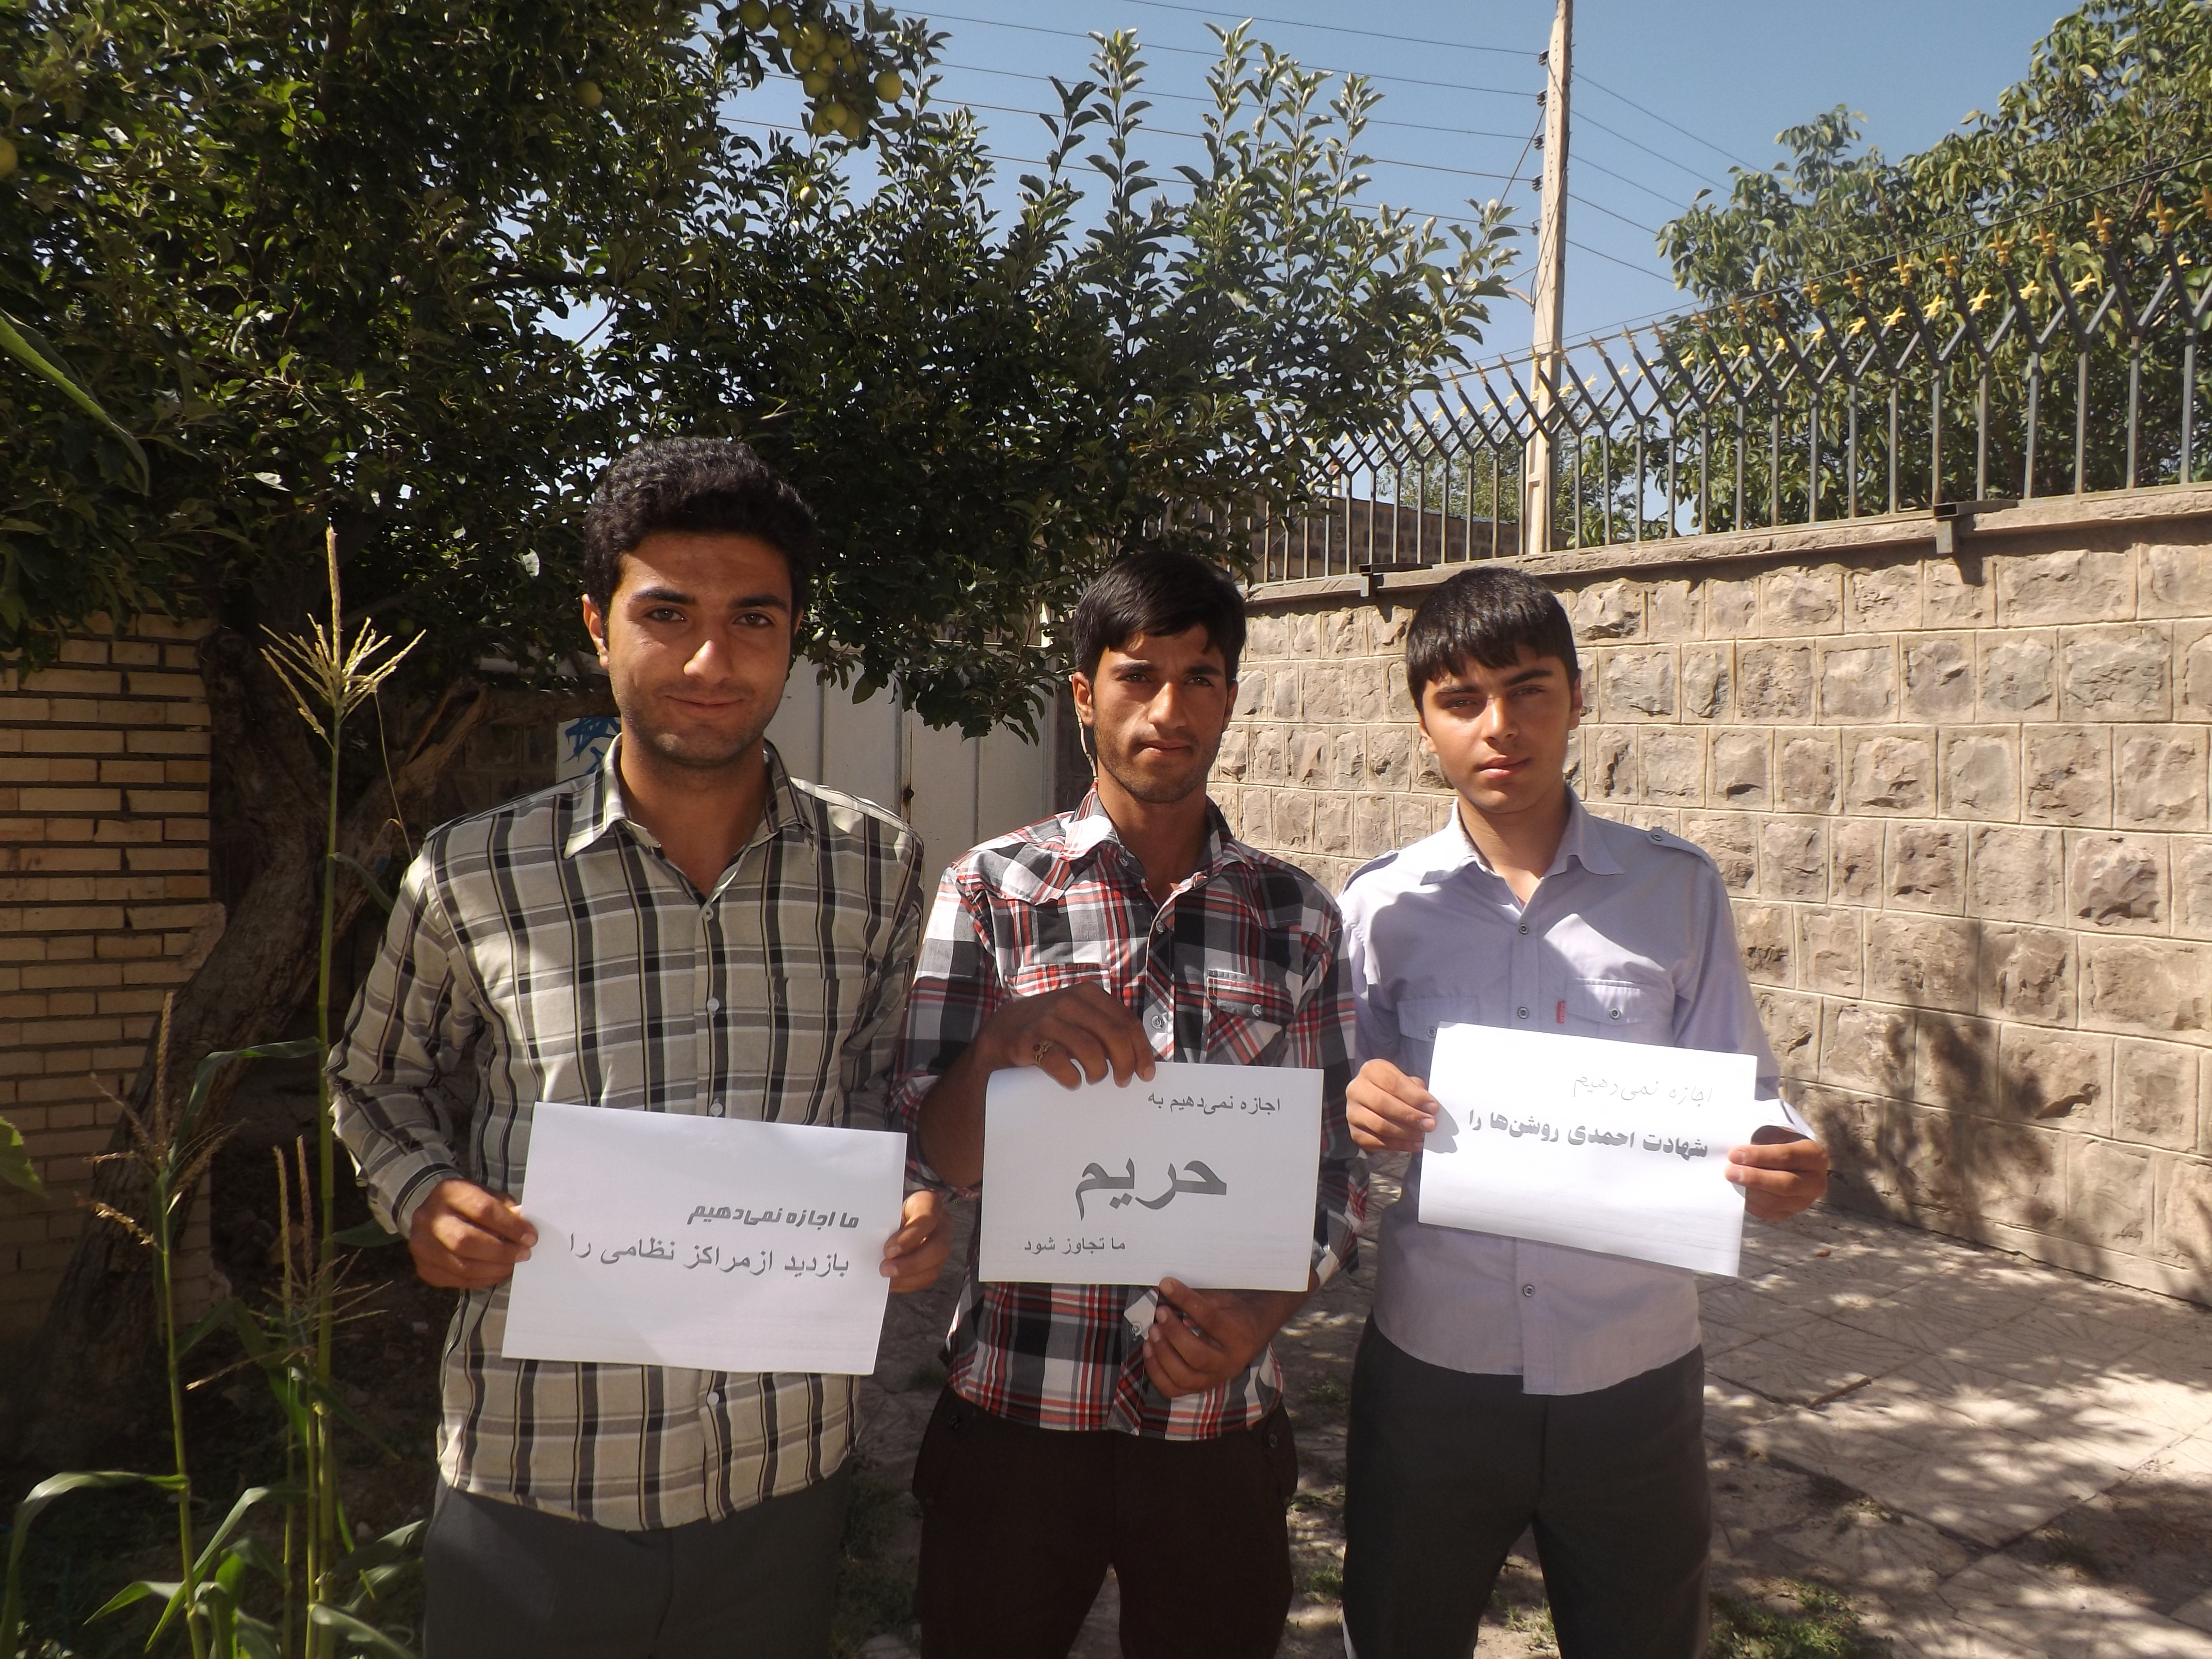 آوای ورزقان: کمپین«ما اجازه نمی دهیم» در شهرستان ورزقان تشکیل شد+تصاویر